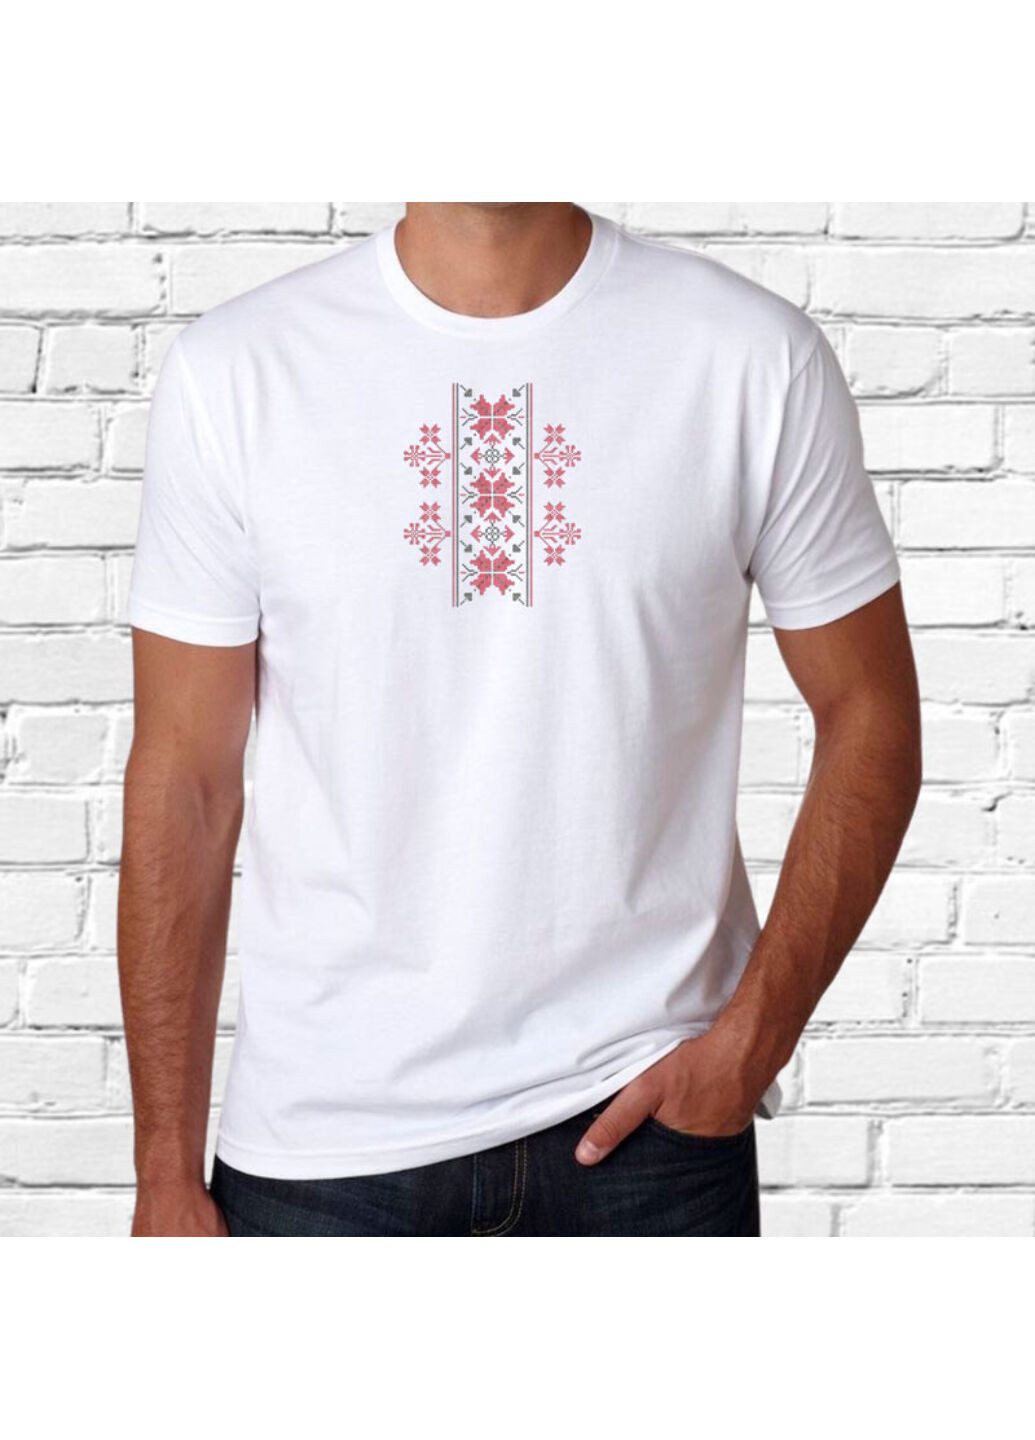 Біла футболка з вишивкою етно 01-5 чоловіча білий xl No Brand